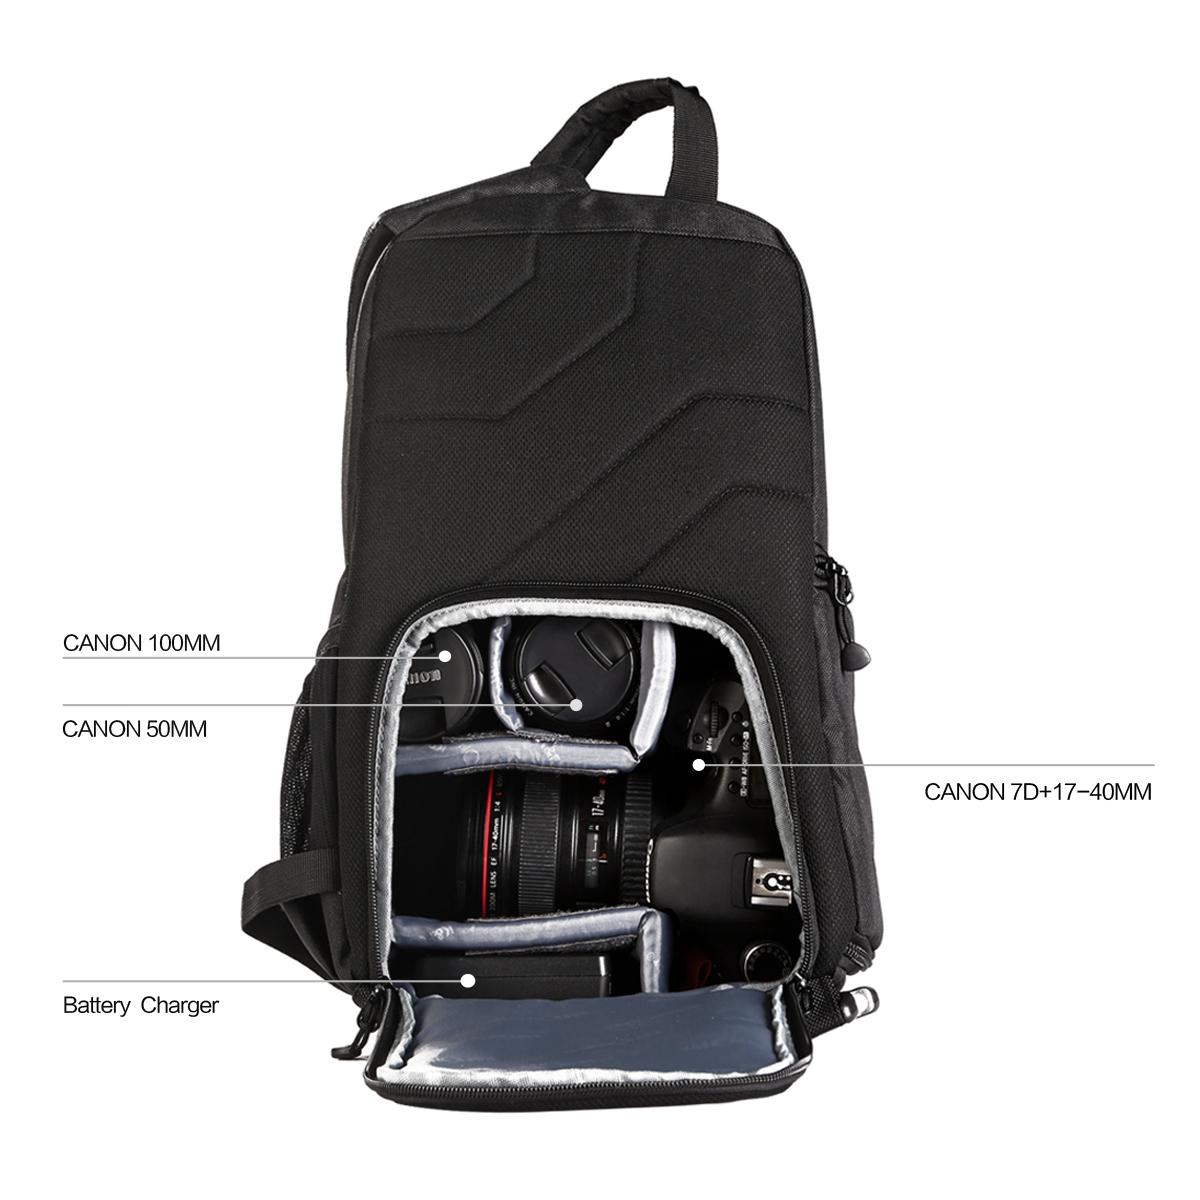 K&F Concept KF13-050 Sling Camera Backpack for Travel Photography for DSLR Cameras